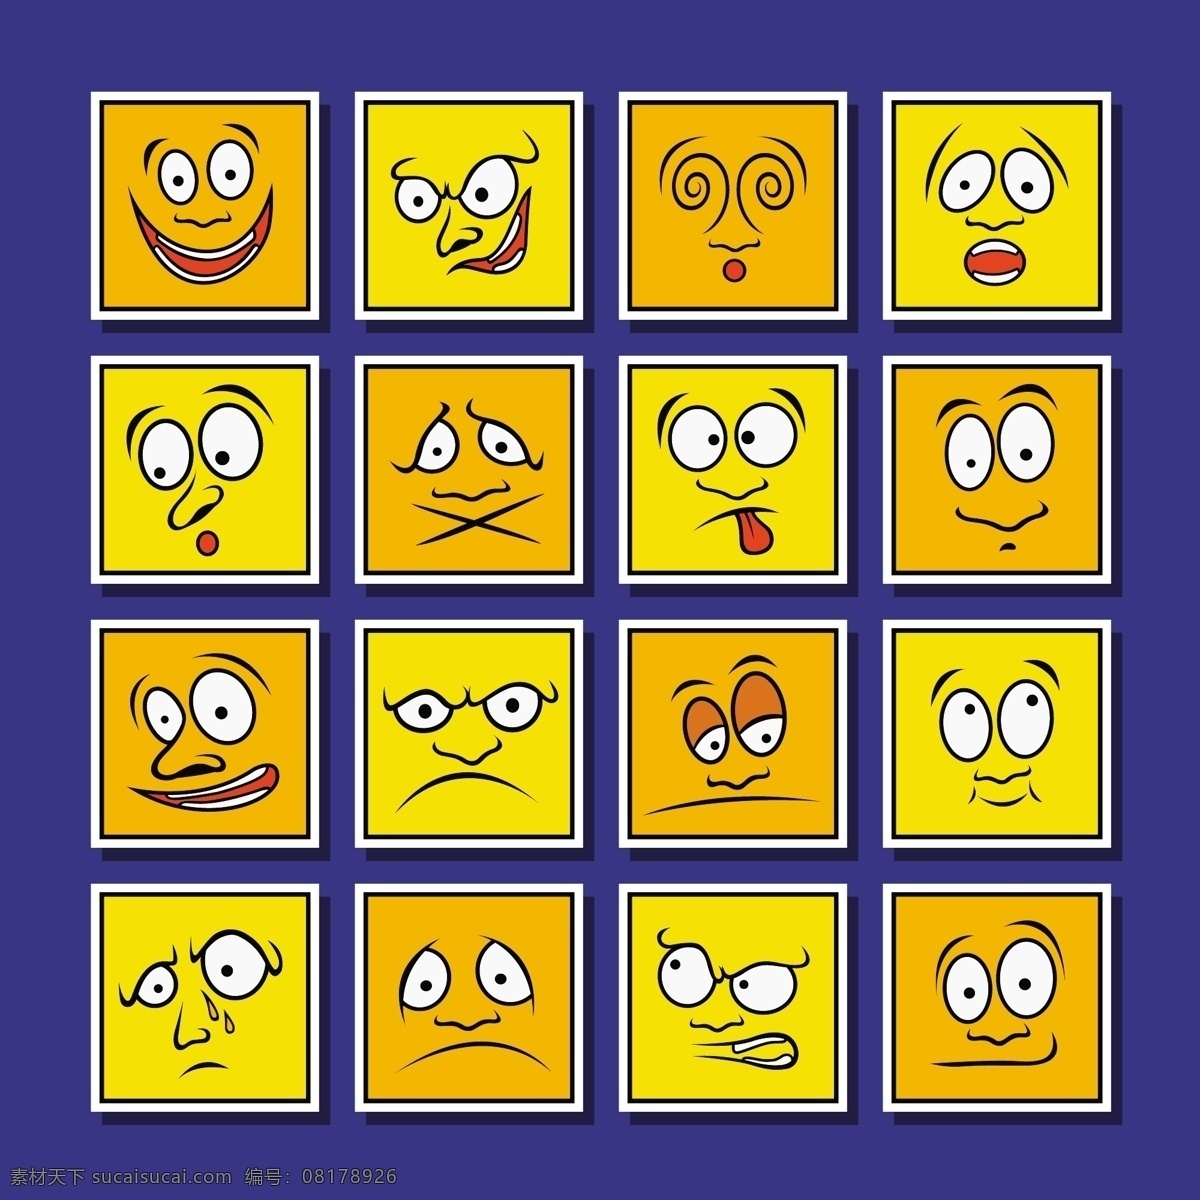 卡通 黄色 表情 图集 模板下载 开心 生气 愤怒 伤心 其他人物 卡通形象 矢量人物 矢量素材